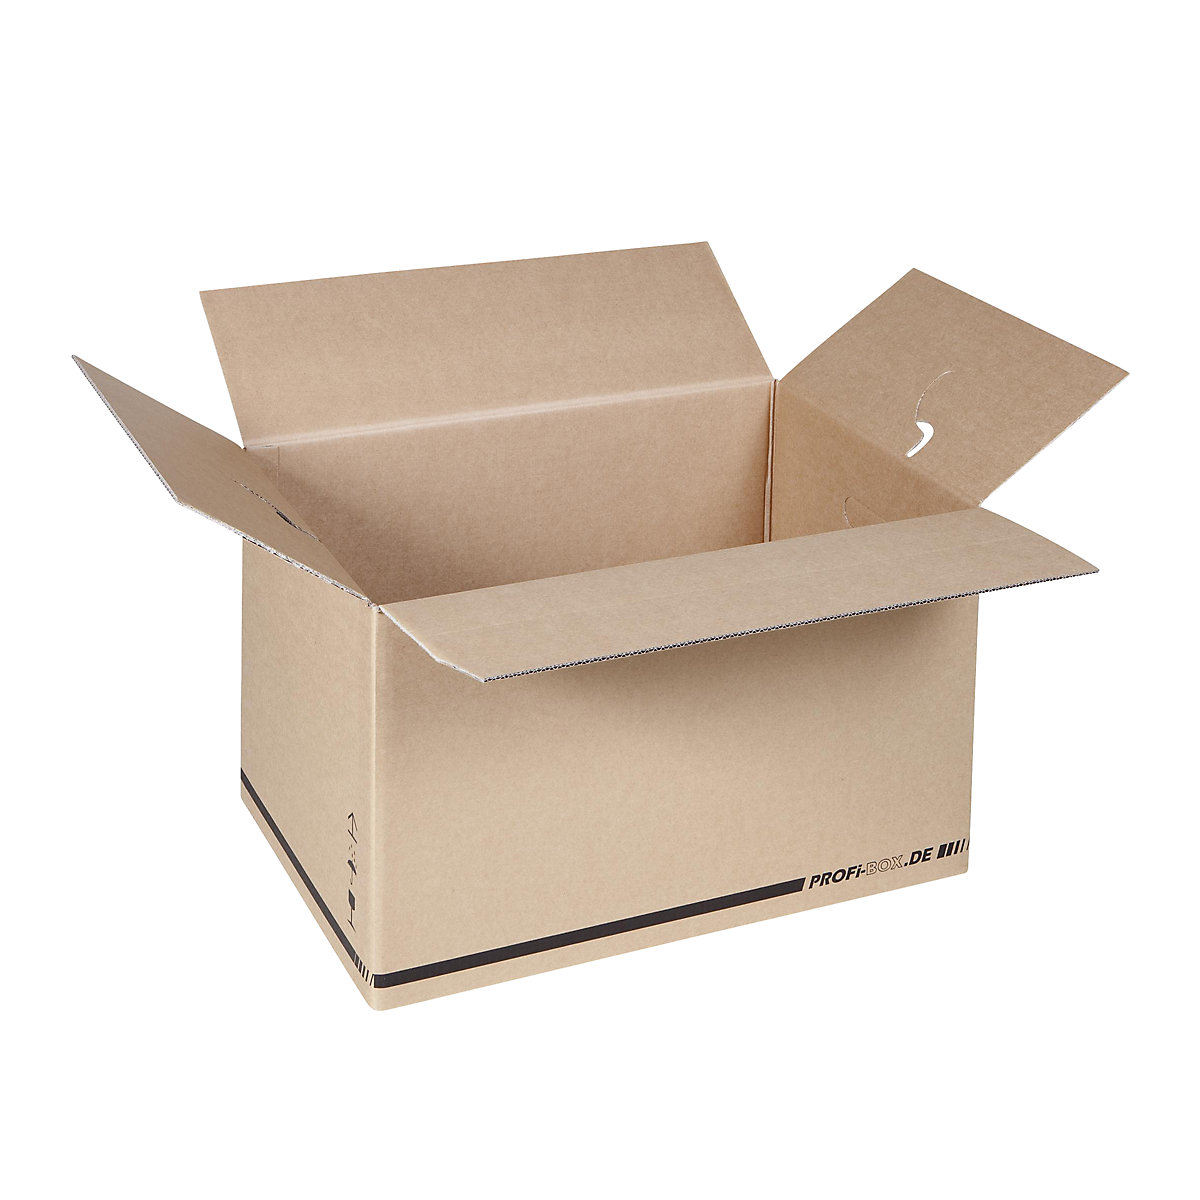 Profesionalne kutije, od 2-valnog kartona, unutarnje dimenzije 574 x 376 x 340 mm, FEFCO 0216, pak. 50 kom.